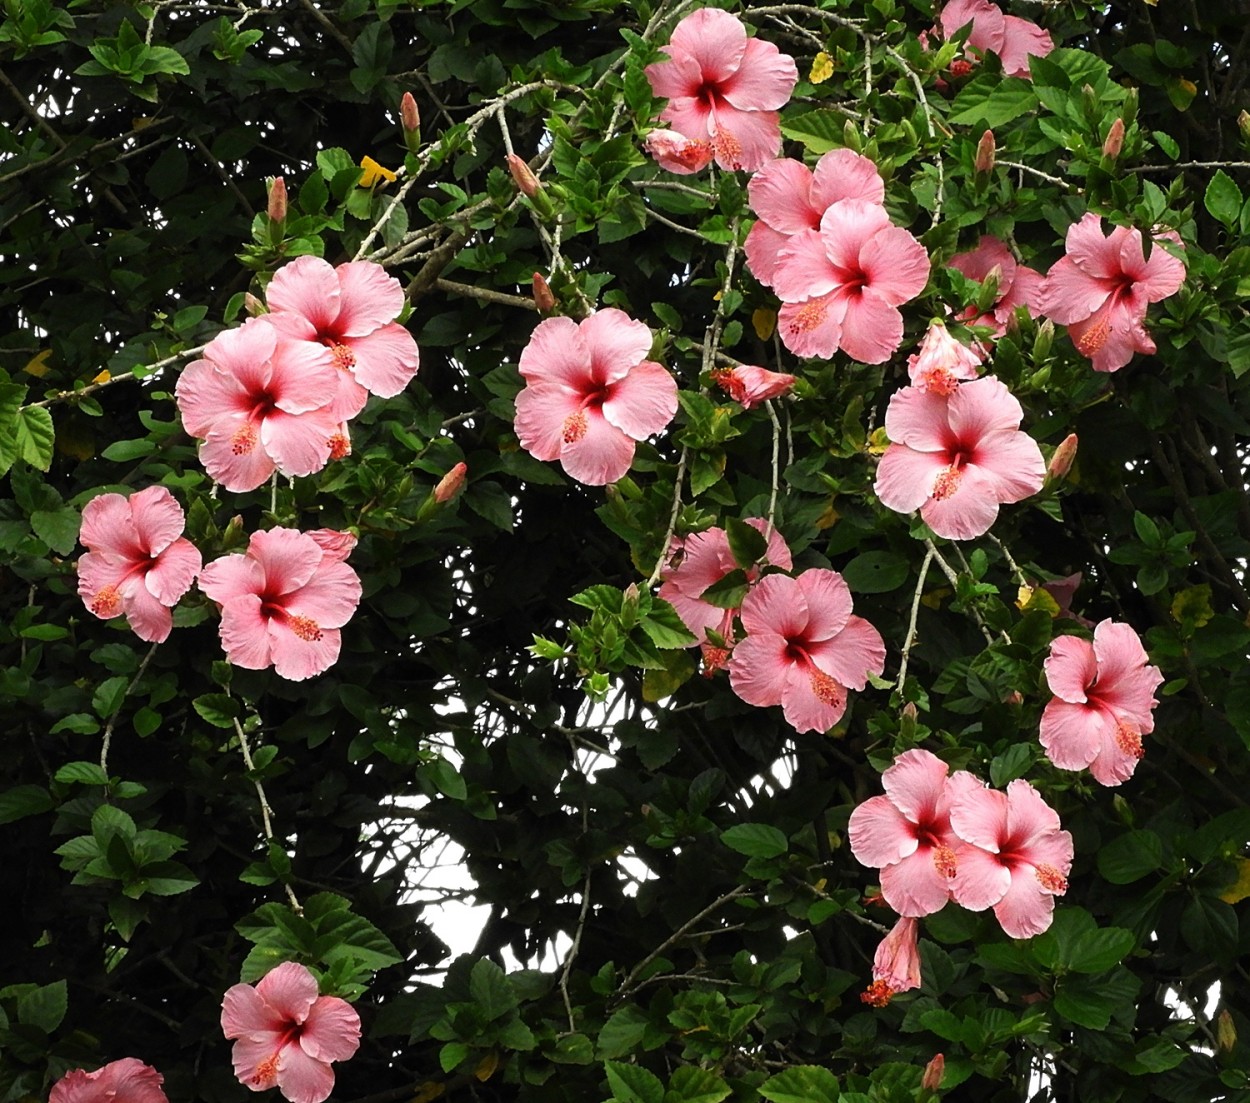 "Uma rica florada de Hibiscos!" de Decio Badari